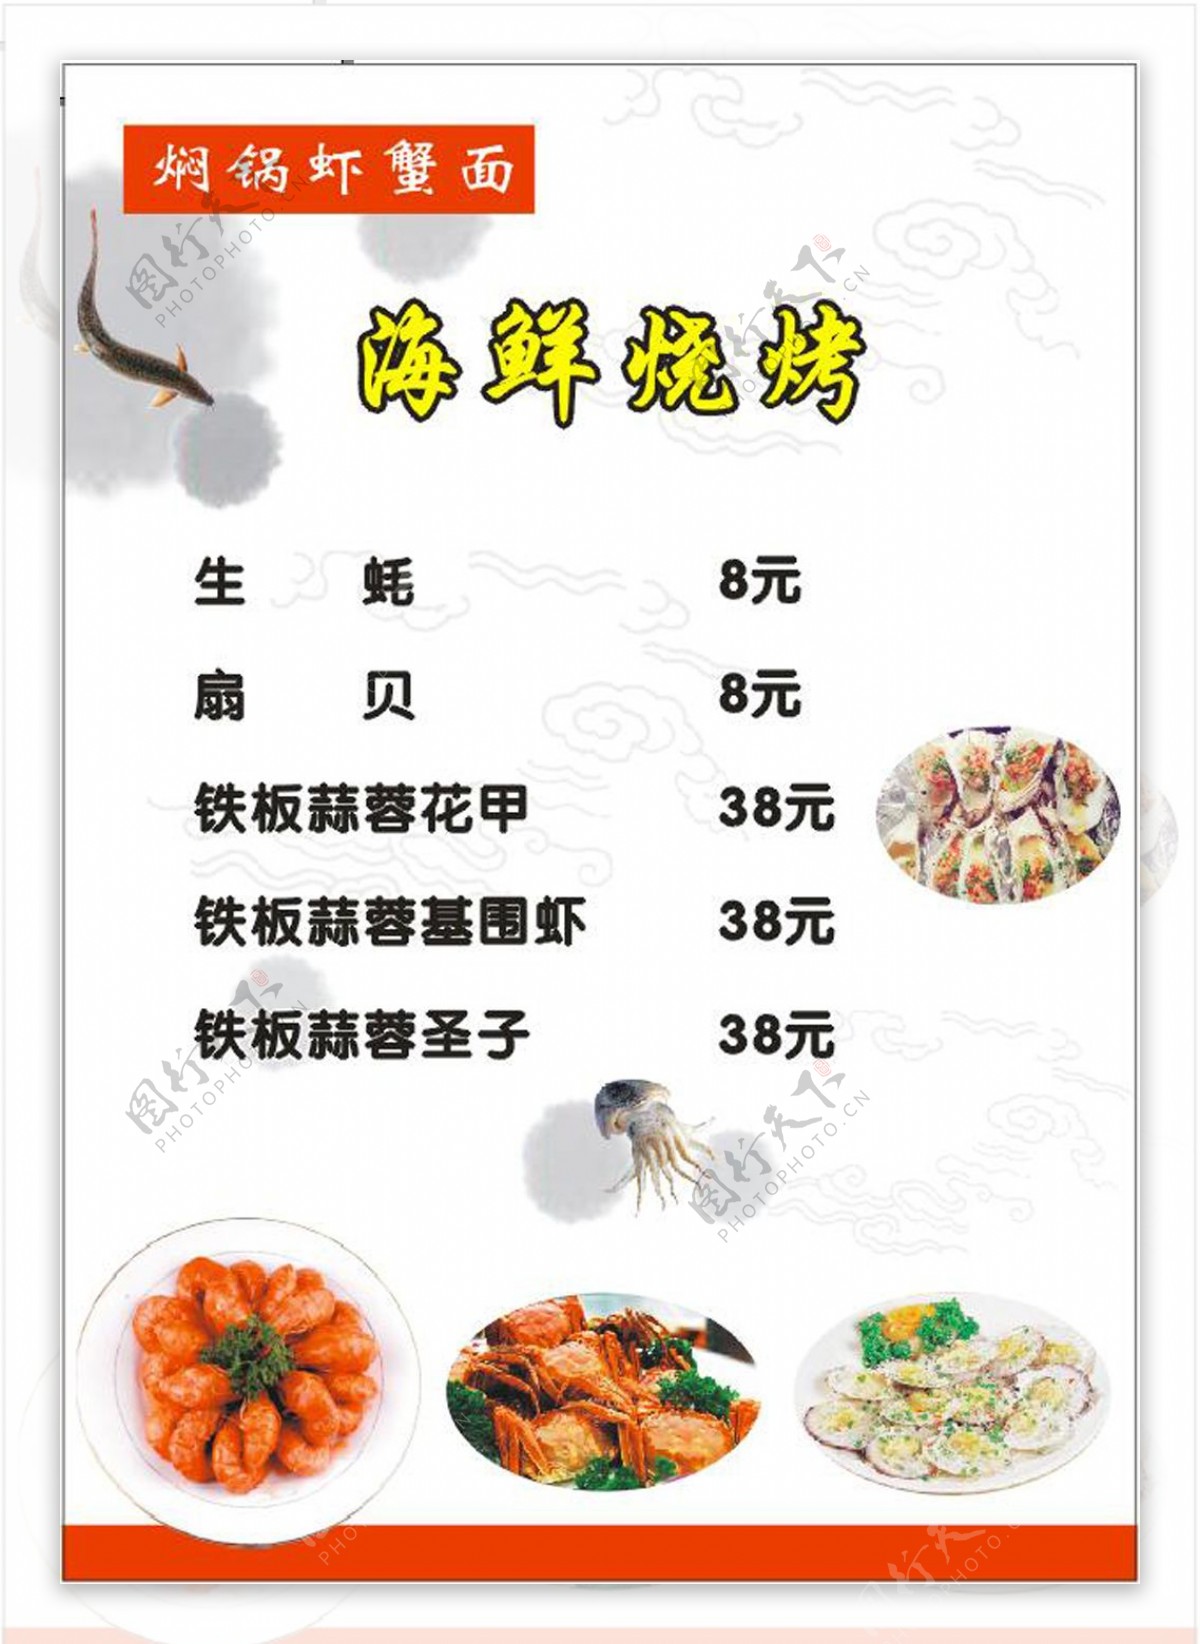 虾蟹面菜谱宣传单